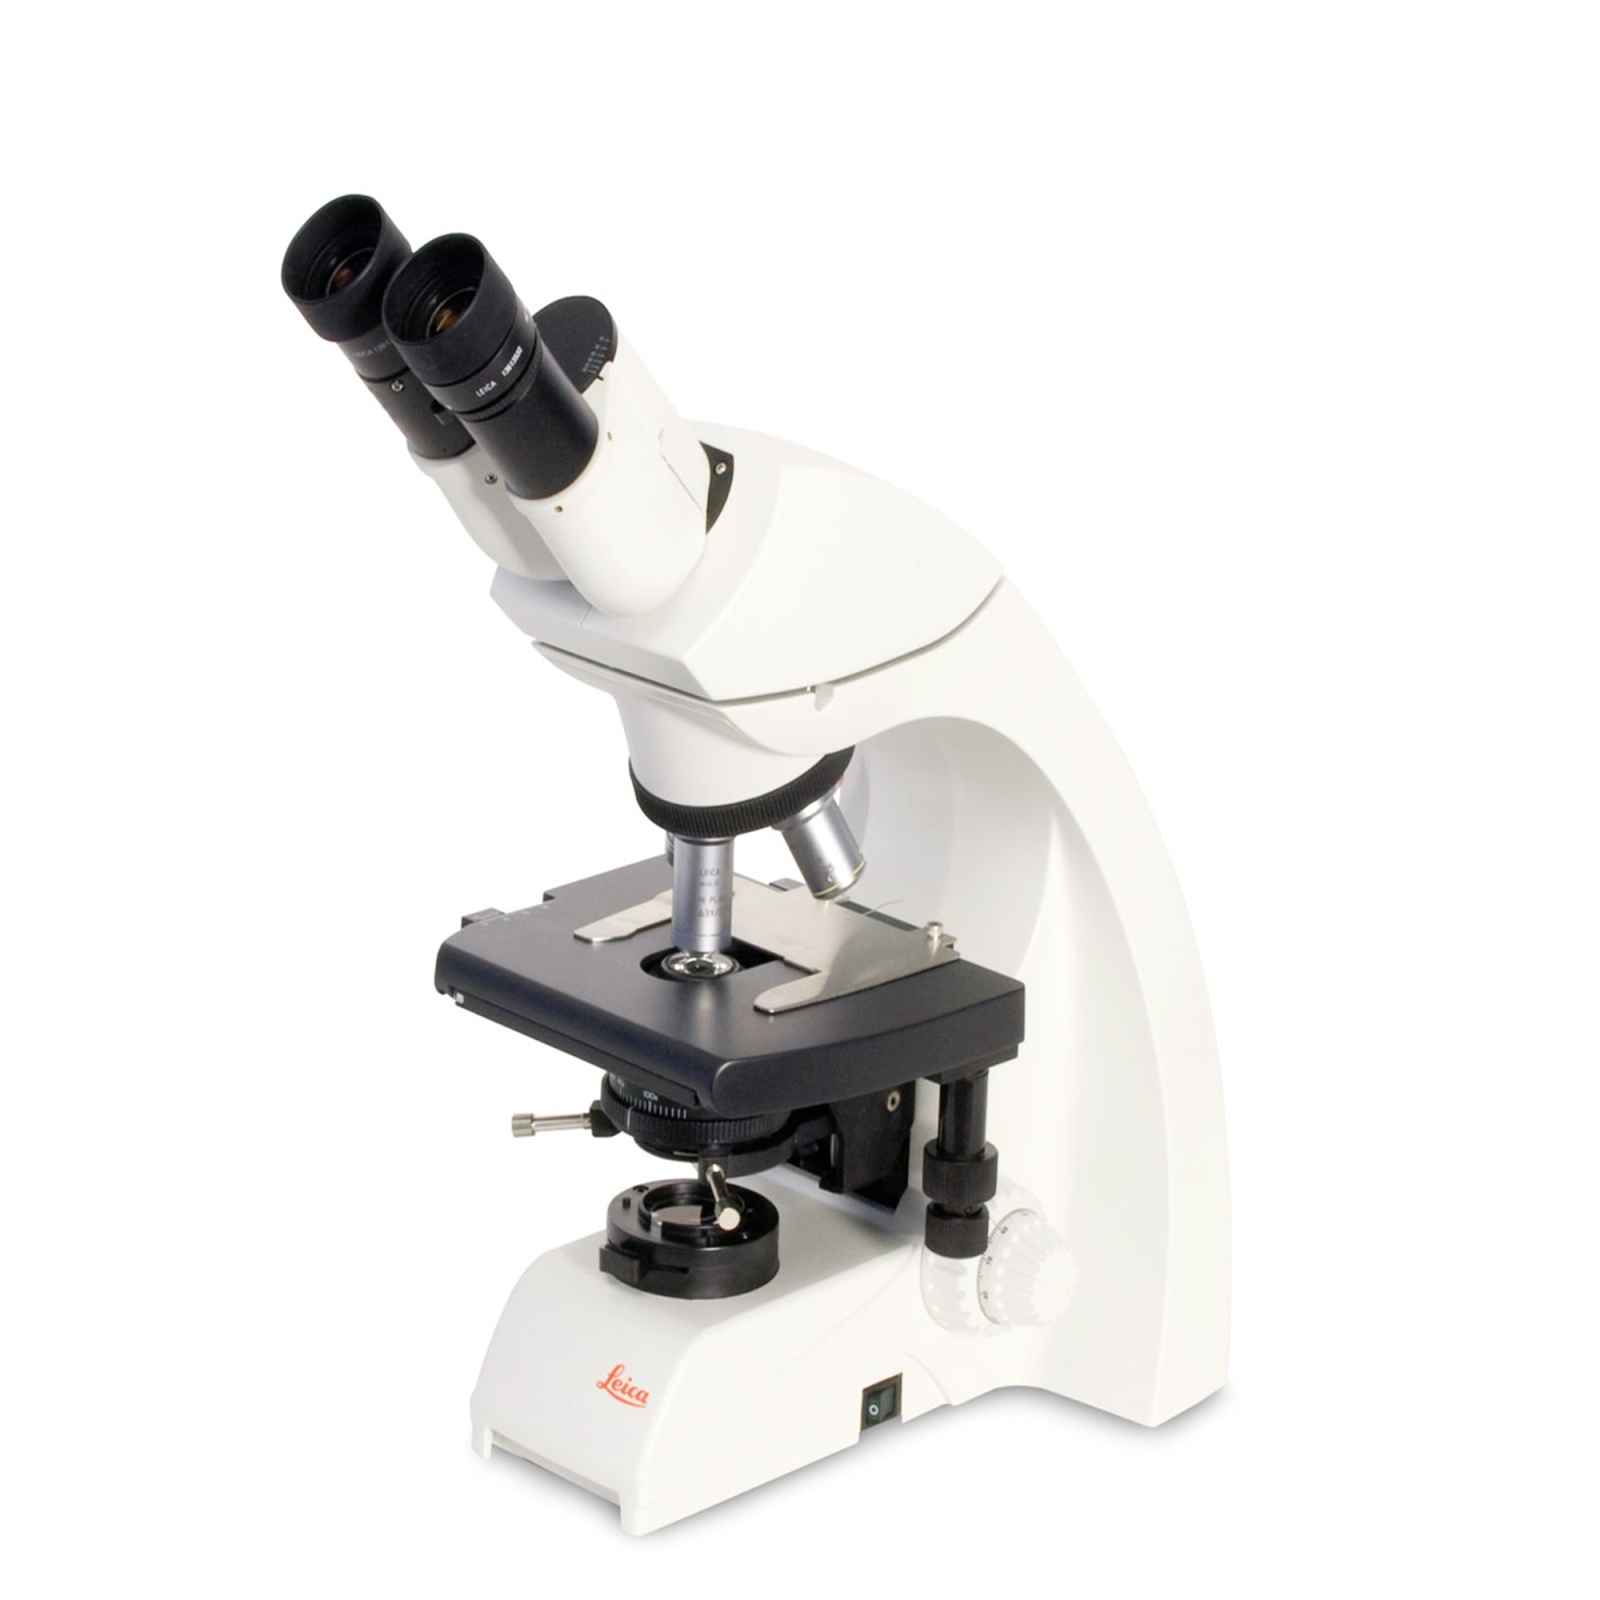 徕卡DM750生物显微镜的图片